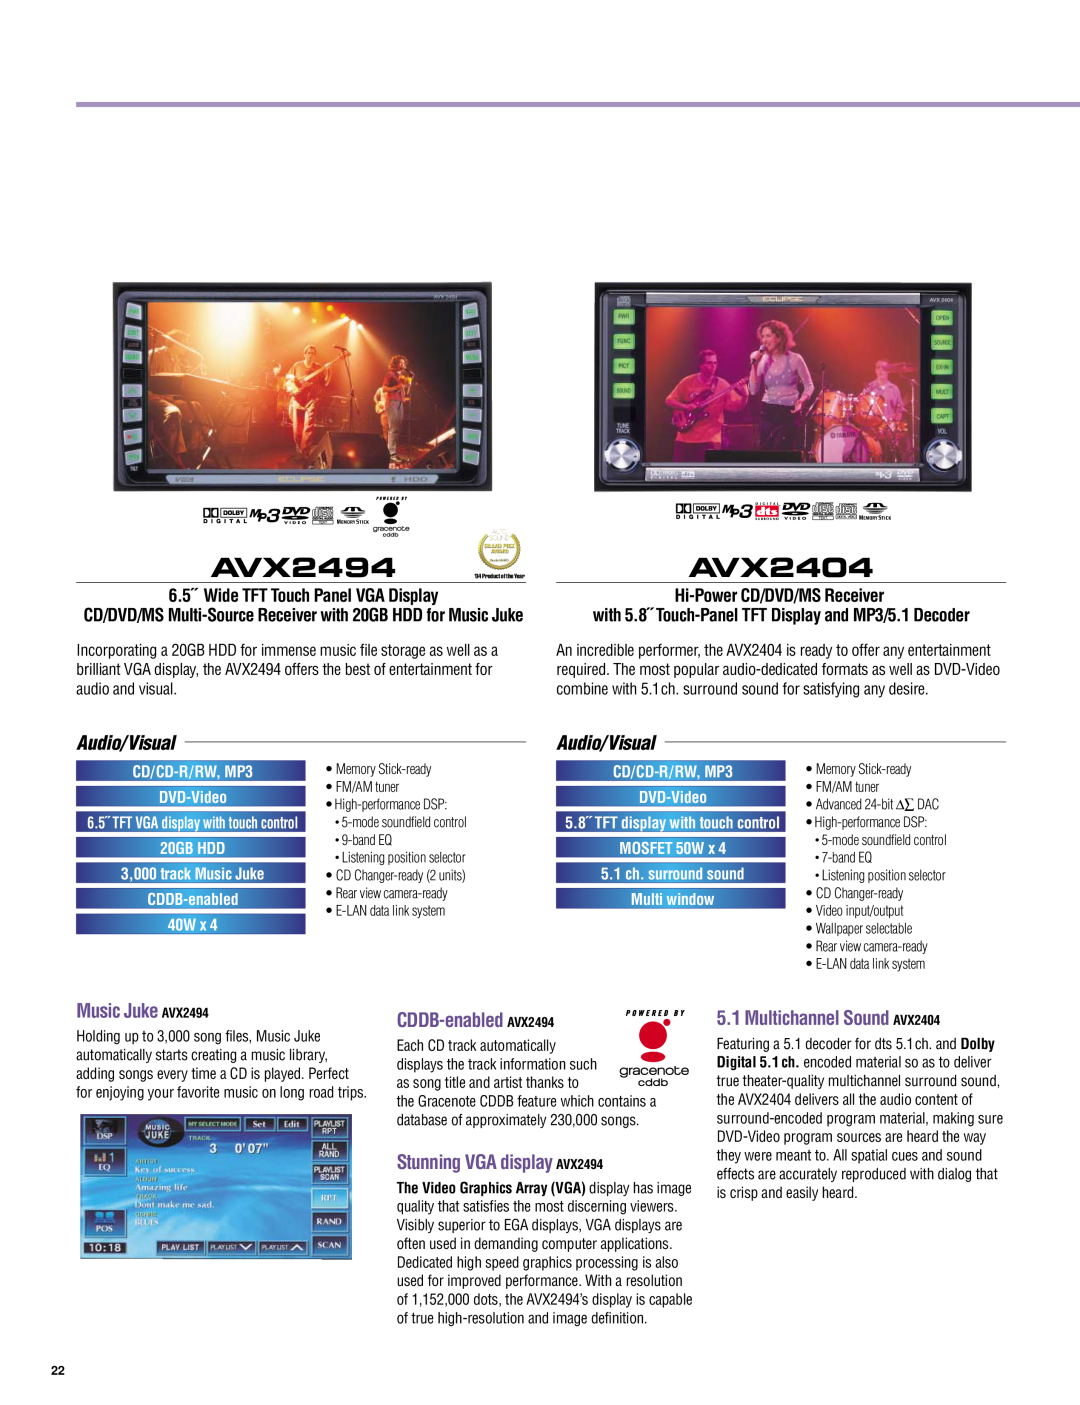 Eclipse - Fujitsu Ten AV3424, AVX5000 AVX2404, Music Juke AVX2494, CDDB-enabled AVX2494, Stunning VGA display AVX2494 